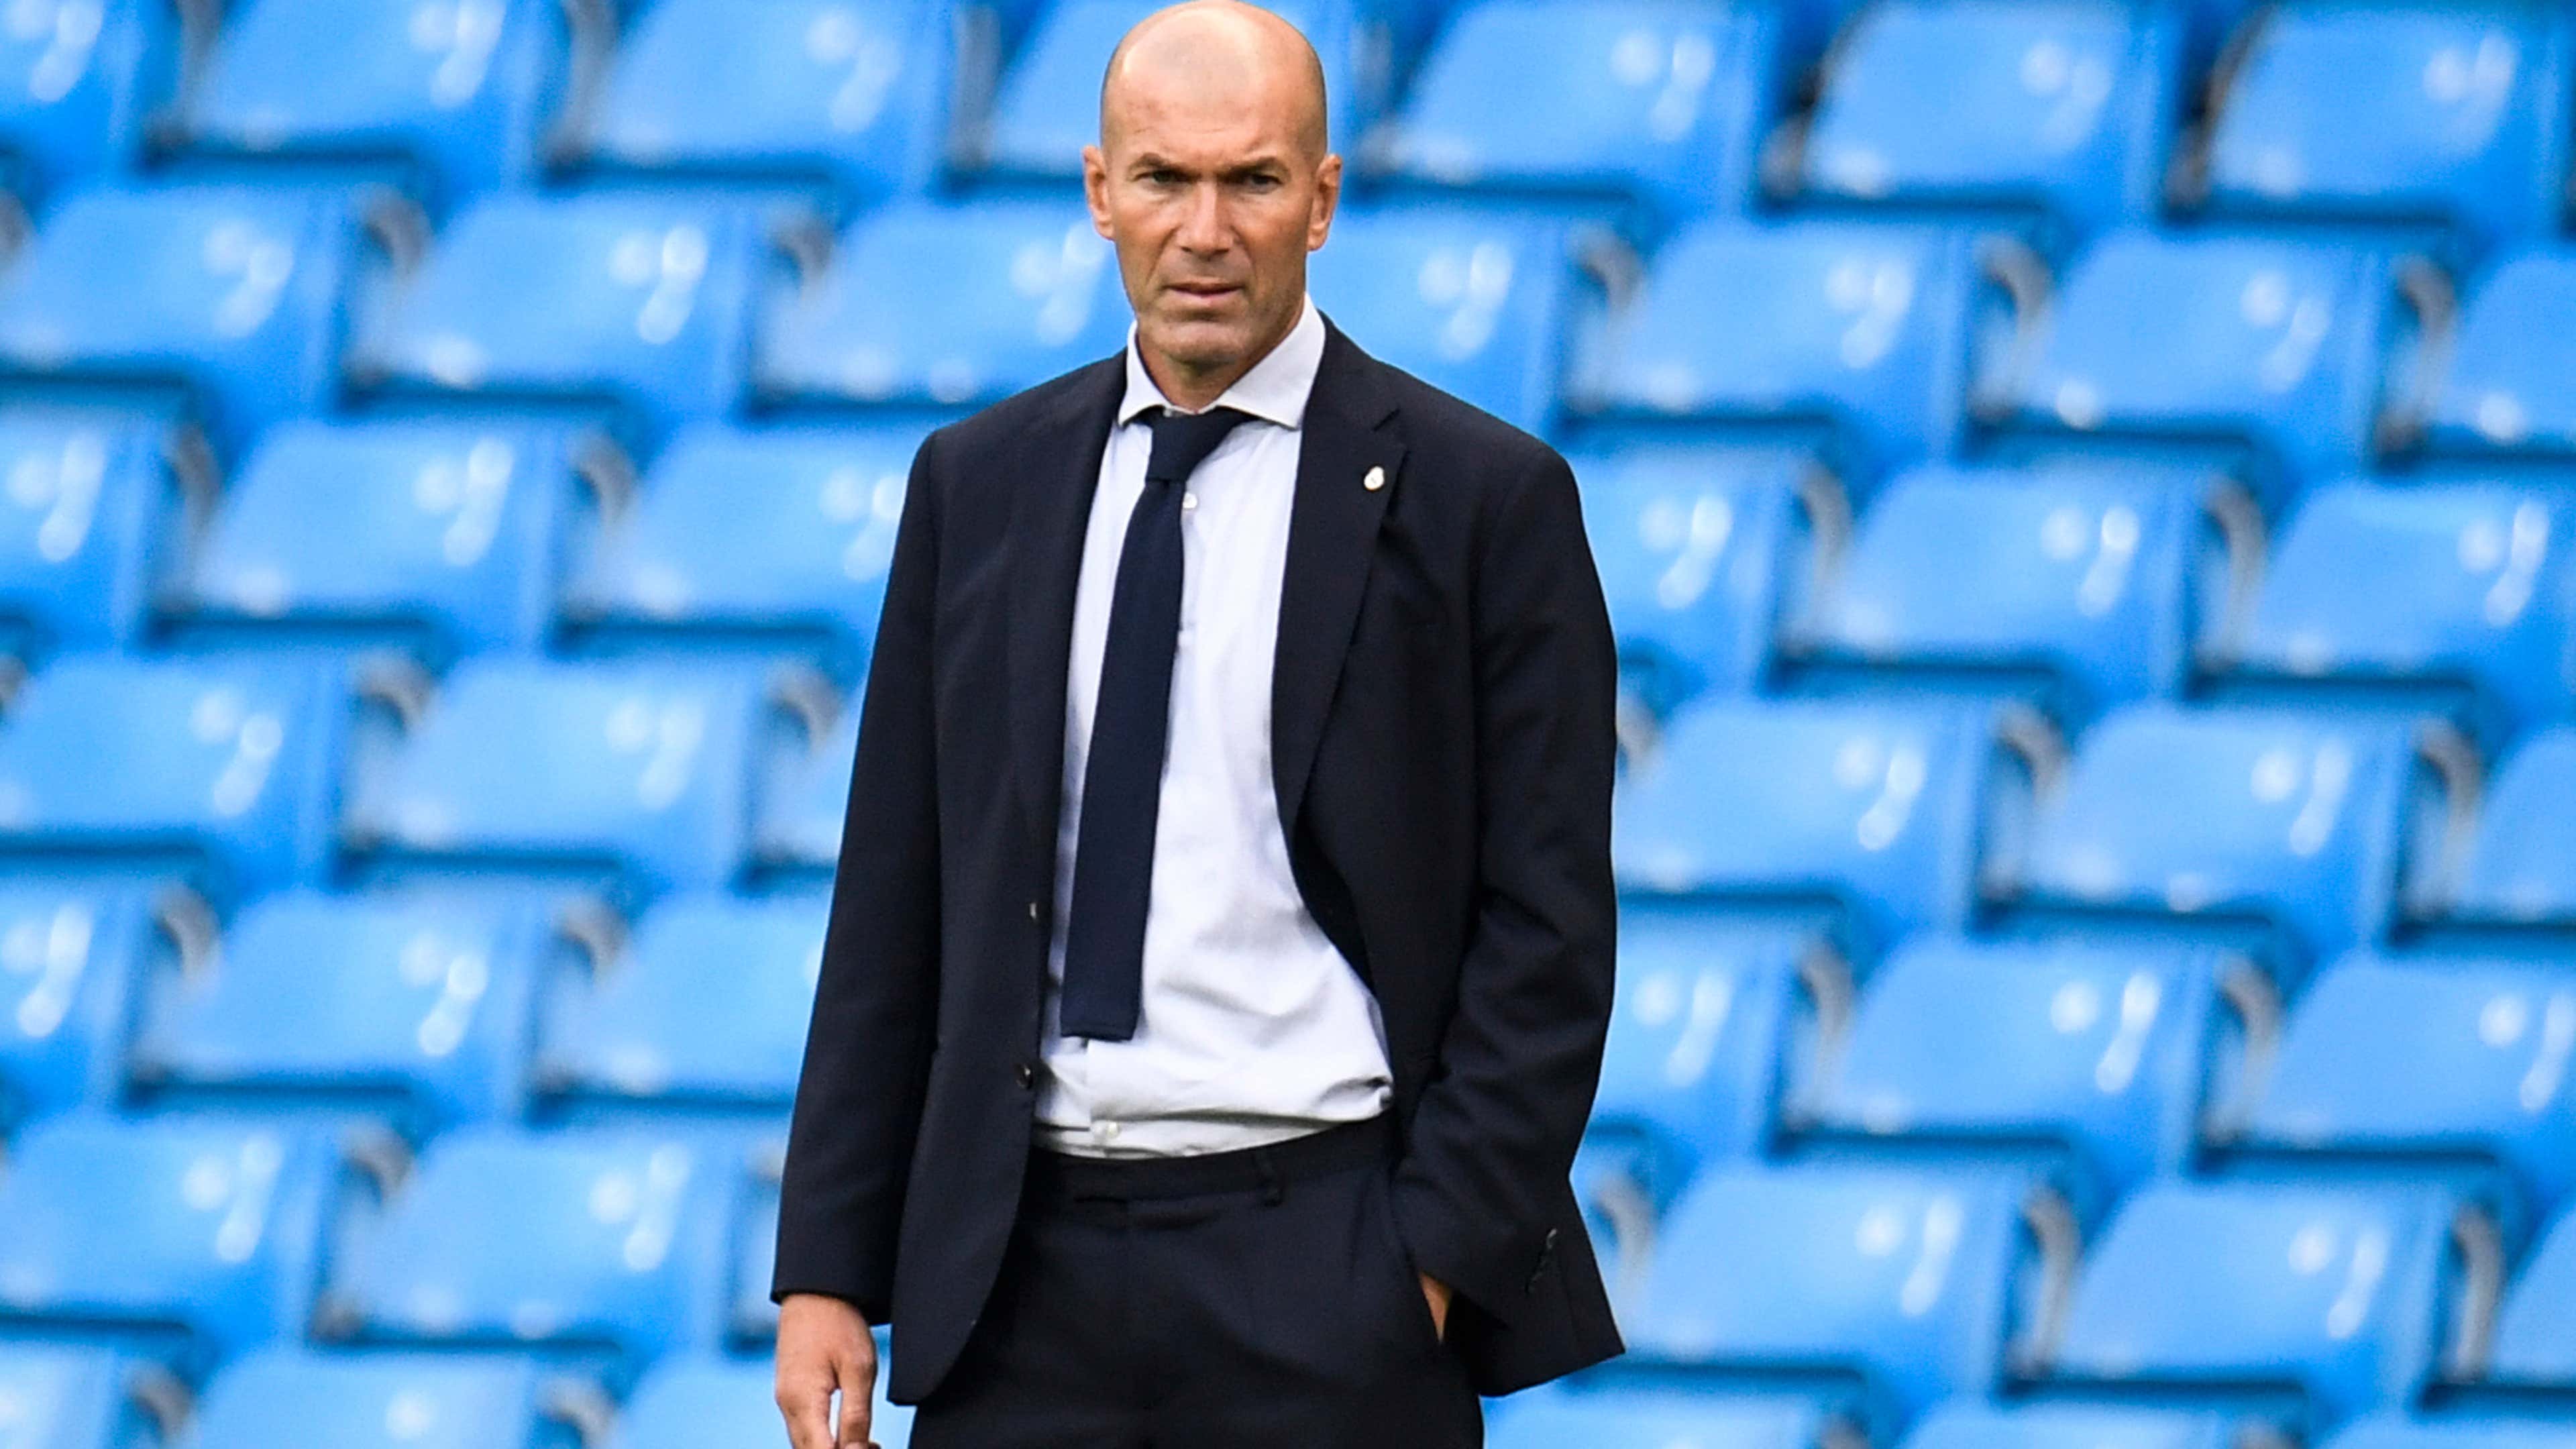 Tin chuyển nhượng trưa 18/12: Harry Maguire cập bến Real Madrid; Zidane sẵn sàng tiếp quản Man Utd